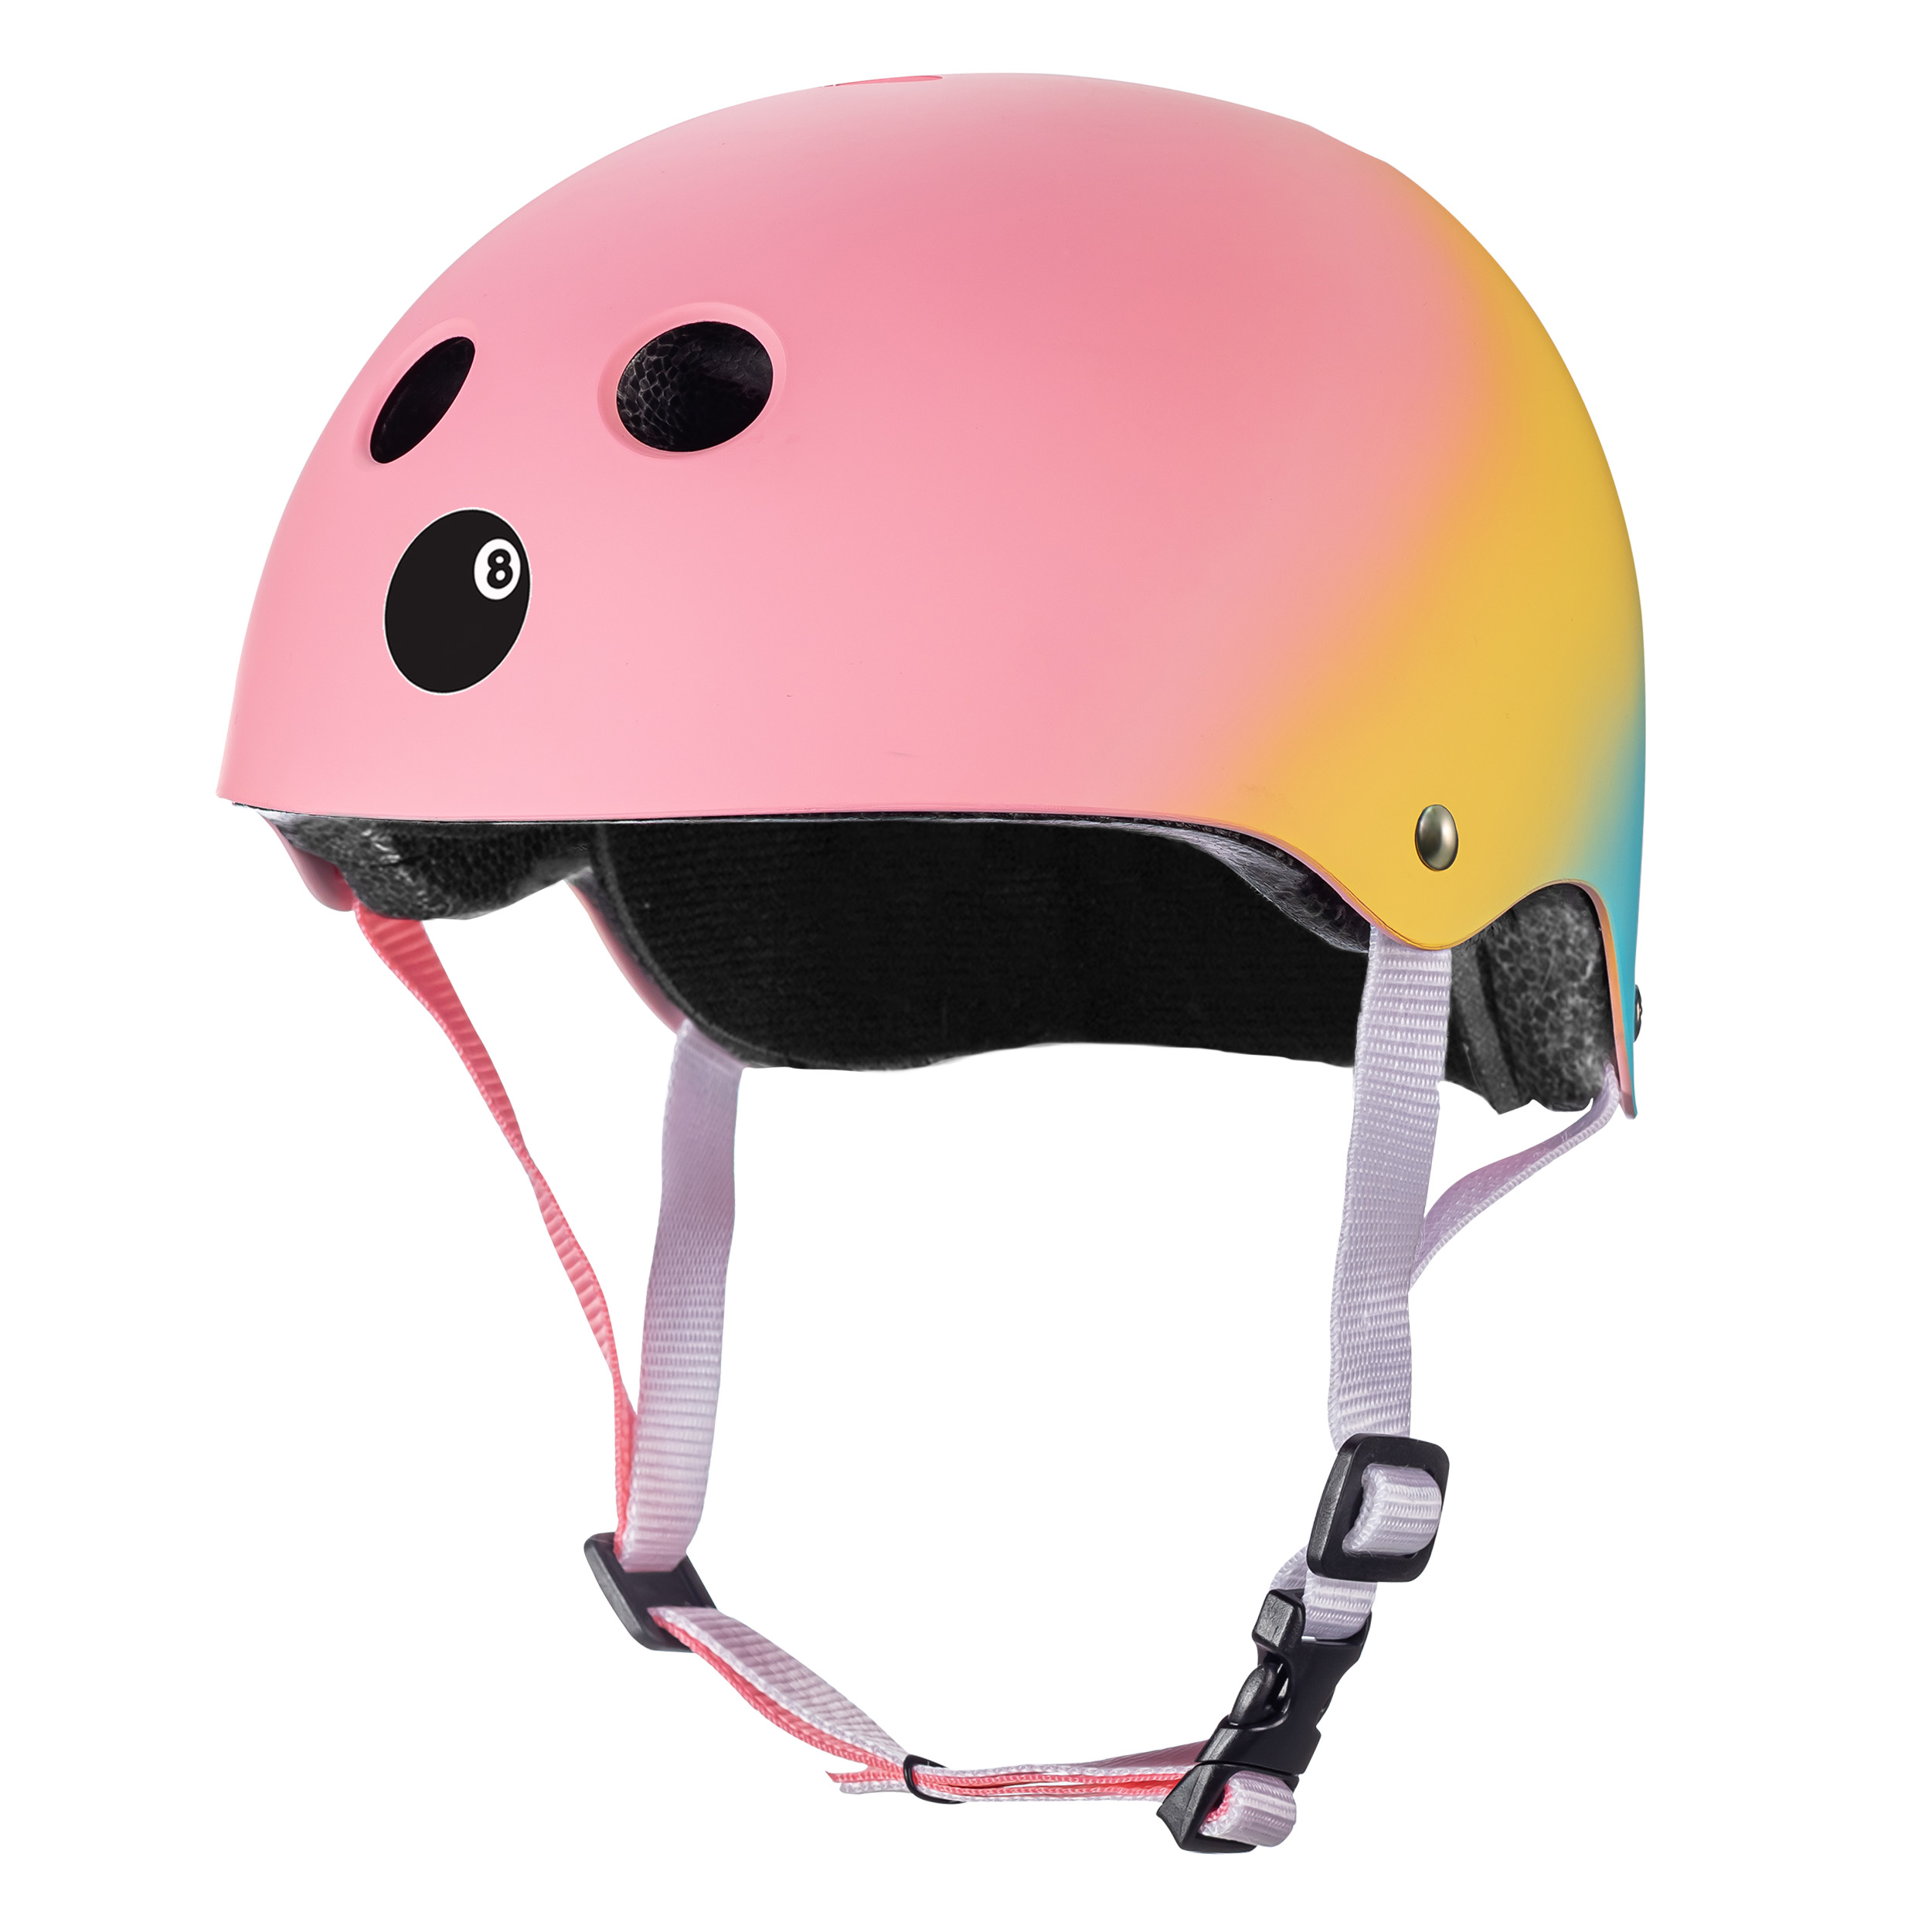 Шлем защитный спортивный Eight Ball Shaved Ice разноцветный детский размер L возраст 8+ обхват головы 52-56 см - фото 2